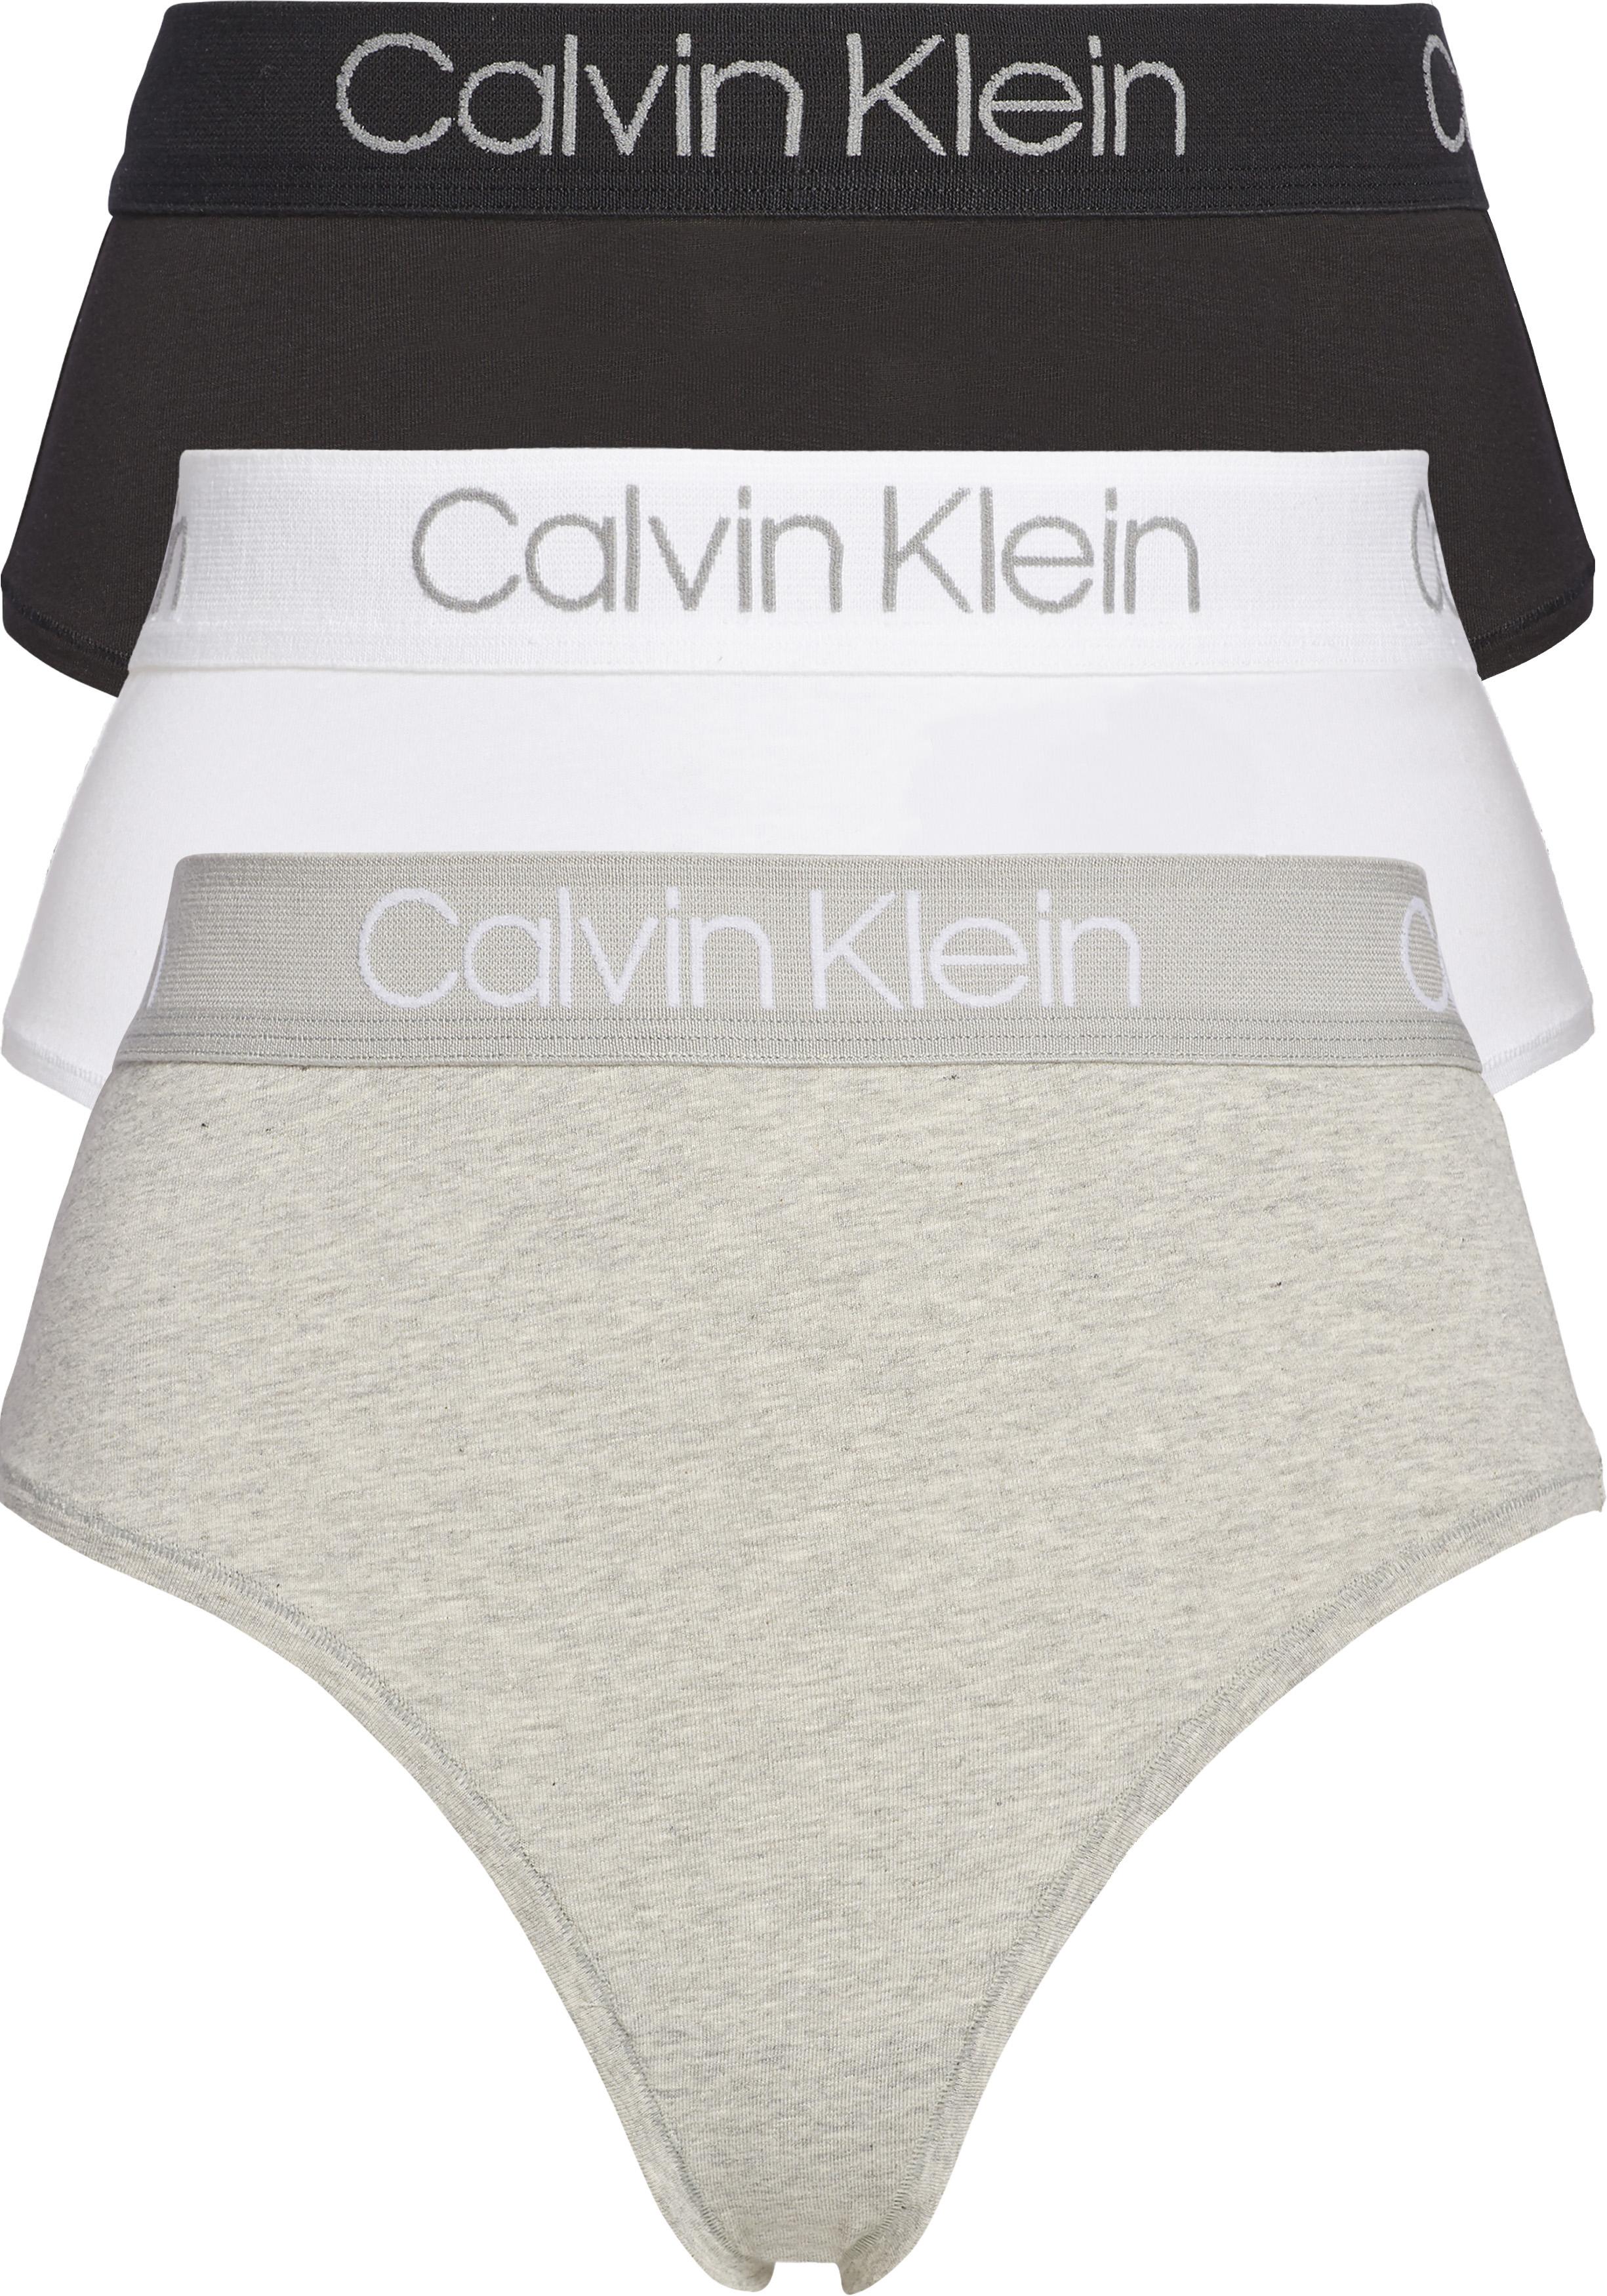 Soepel snelheid Haalbaarheid Calvin Klein dames hoge taille strings (3-pack), zwart, wit en grijs -  Zomer SALE tot 50% korting